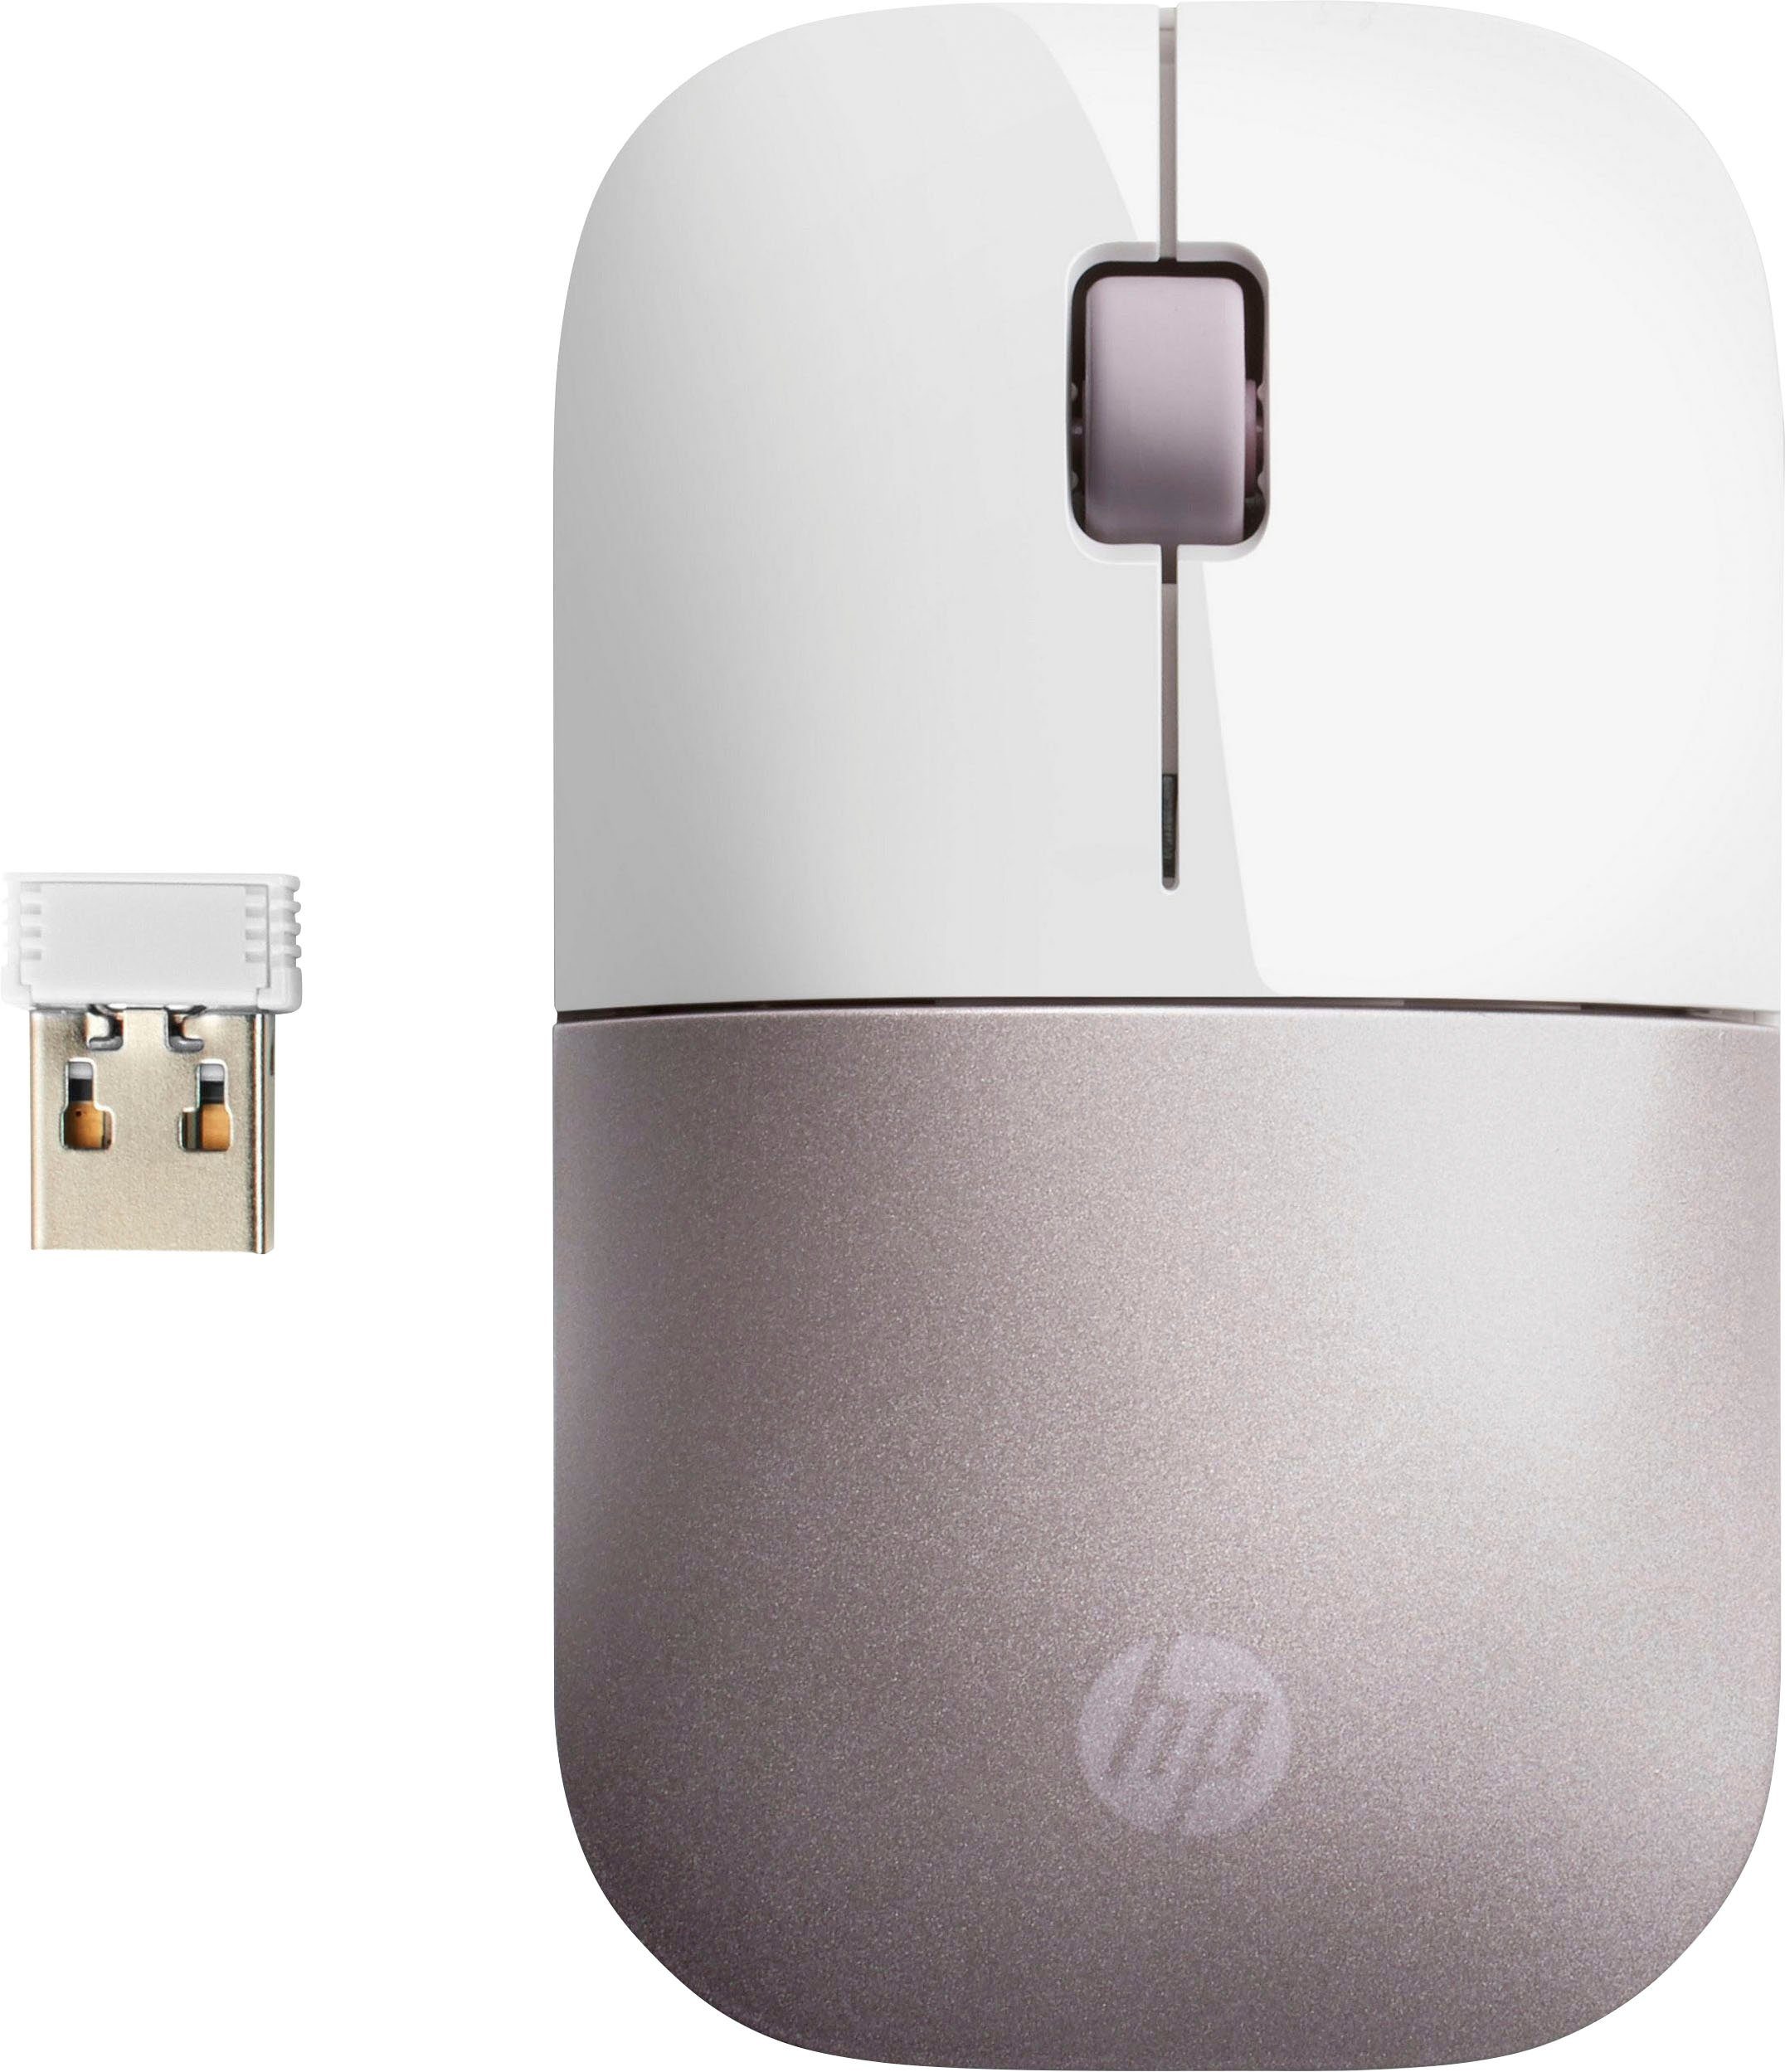 ungeheuerlich HP Z3700 weiß/rosa Maus